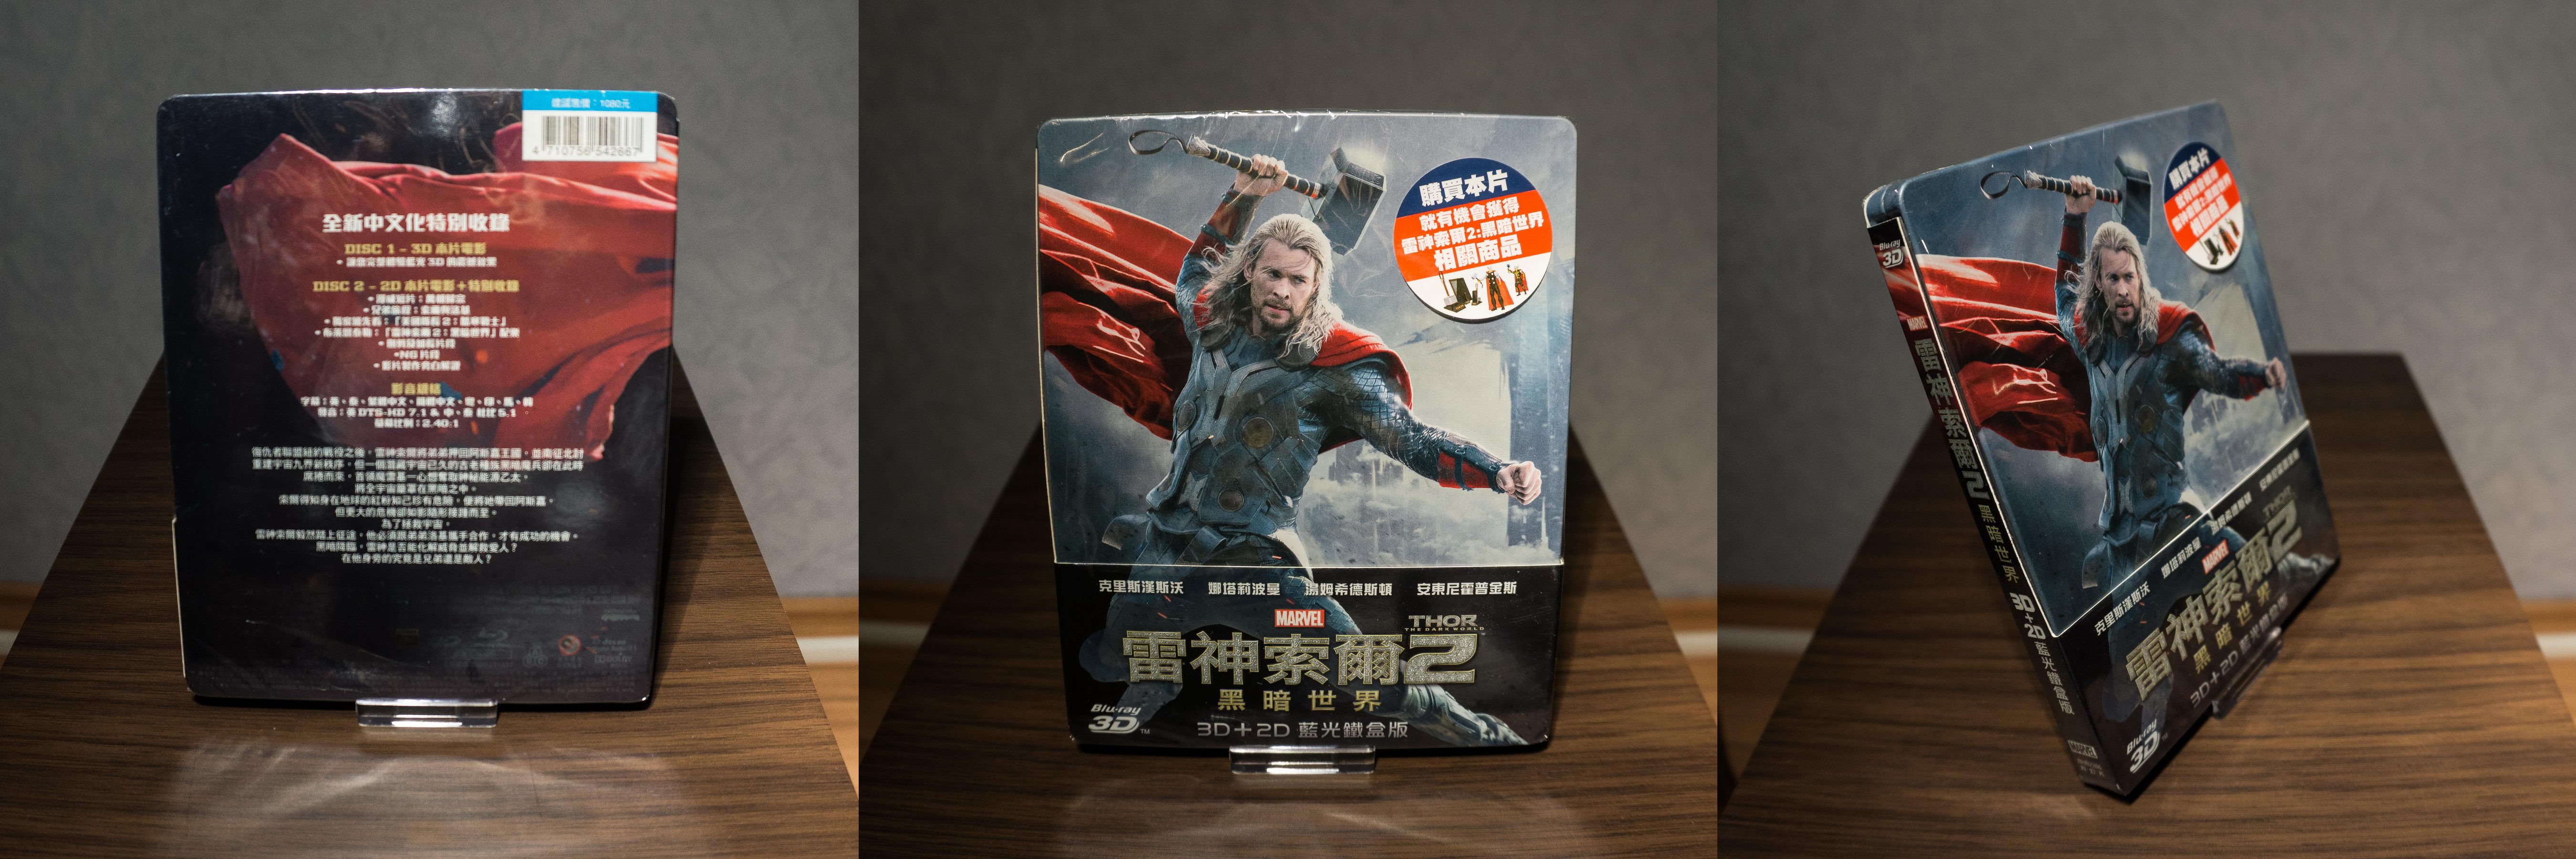 Thor 2 The Dark Kingdom Taiwan Slip